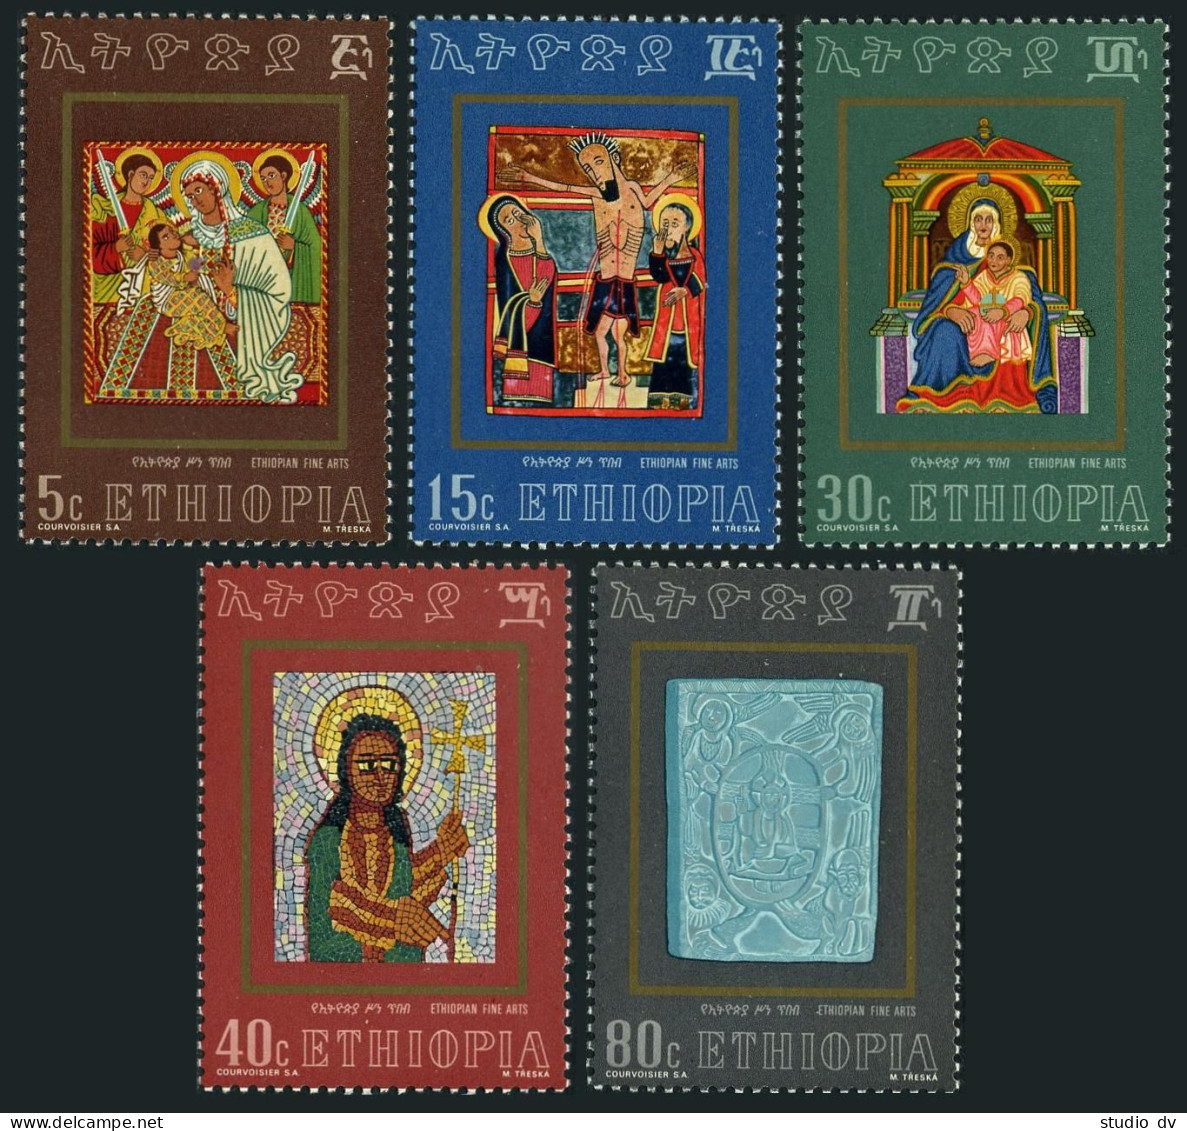 Ethiopia 646-650, MNH. Michel 732-736. Ethiopian Christian Religious Art, 1973. - Ethiopië